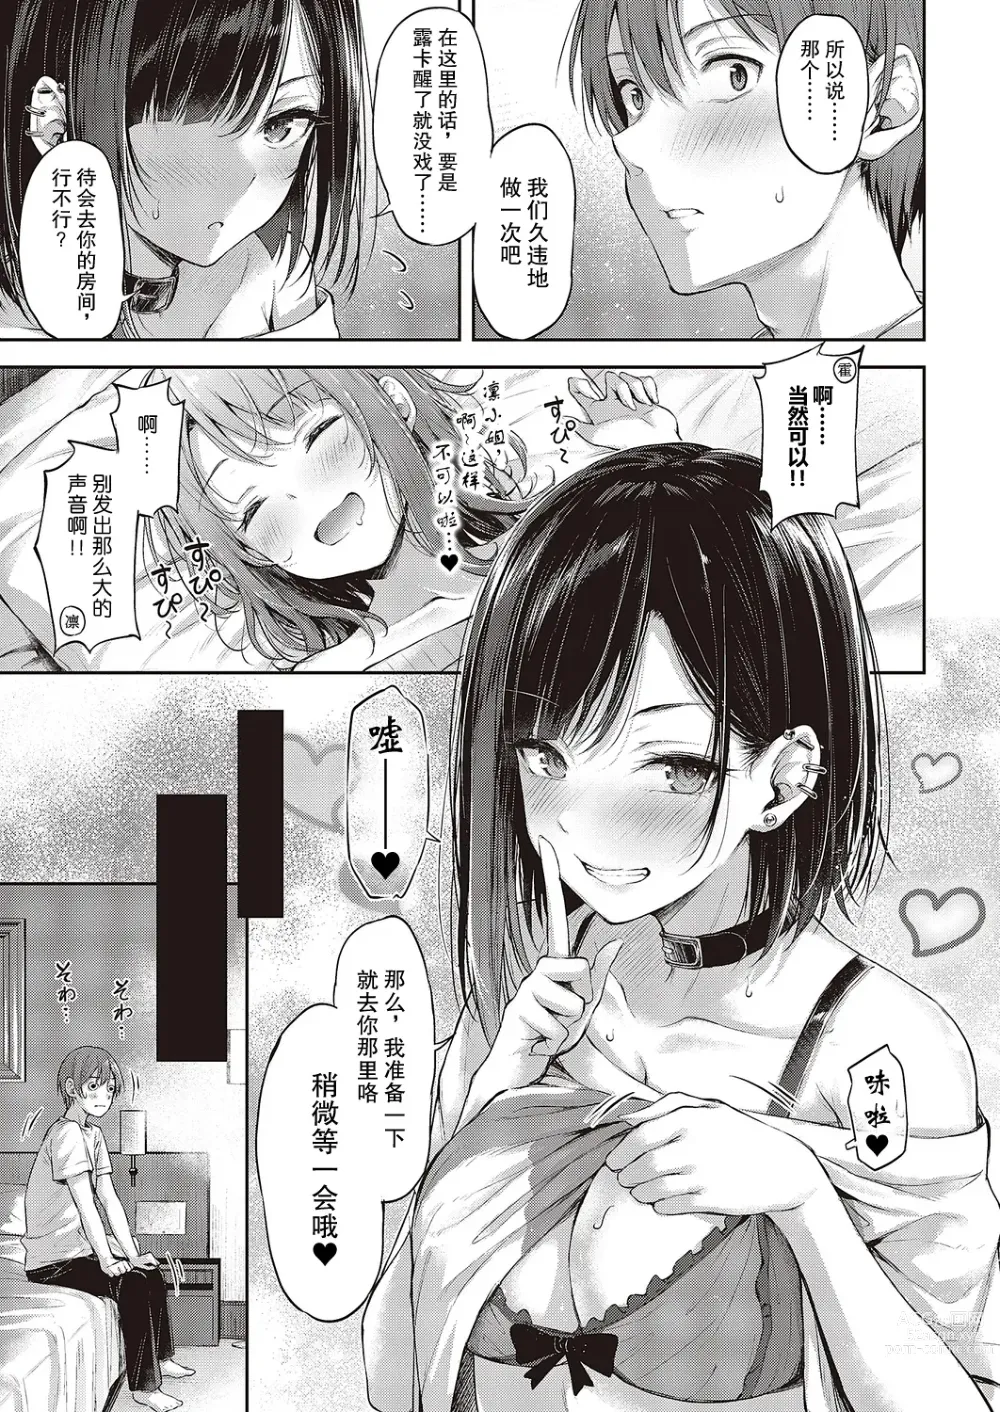 Page 7 of manga 恋爱枪战 绝地反击